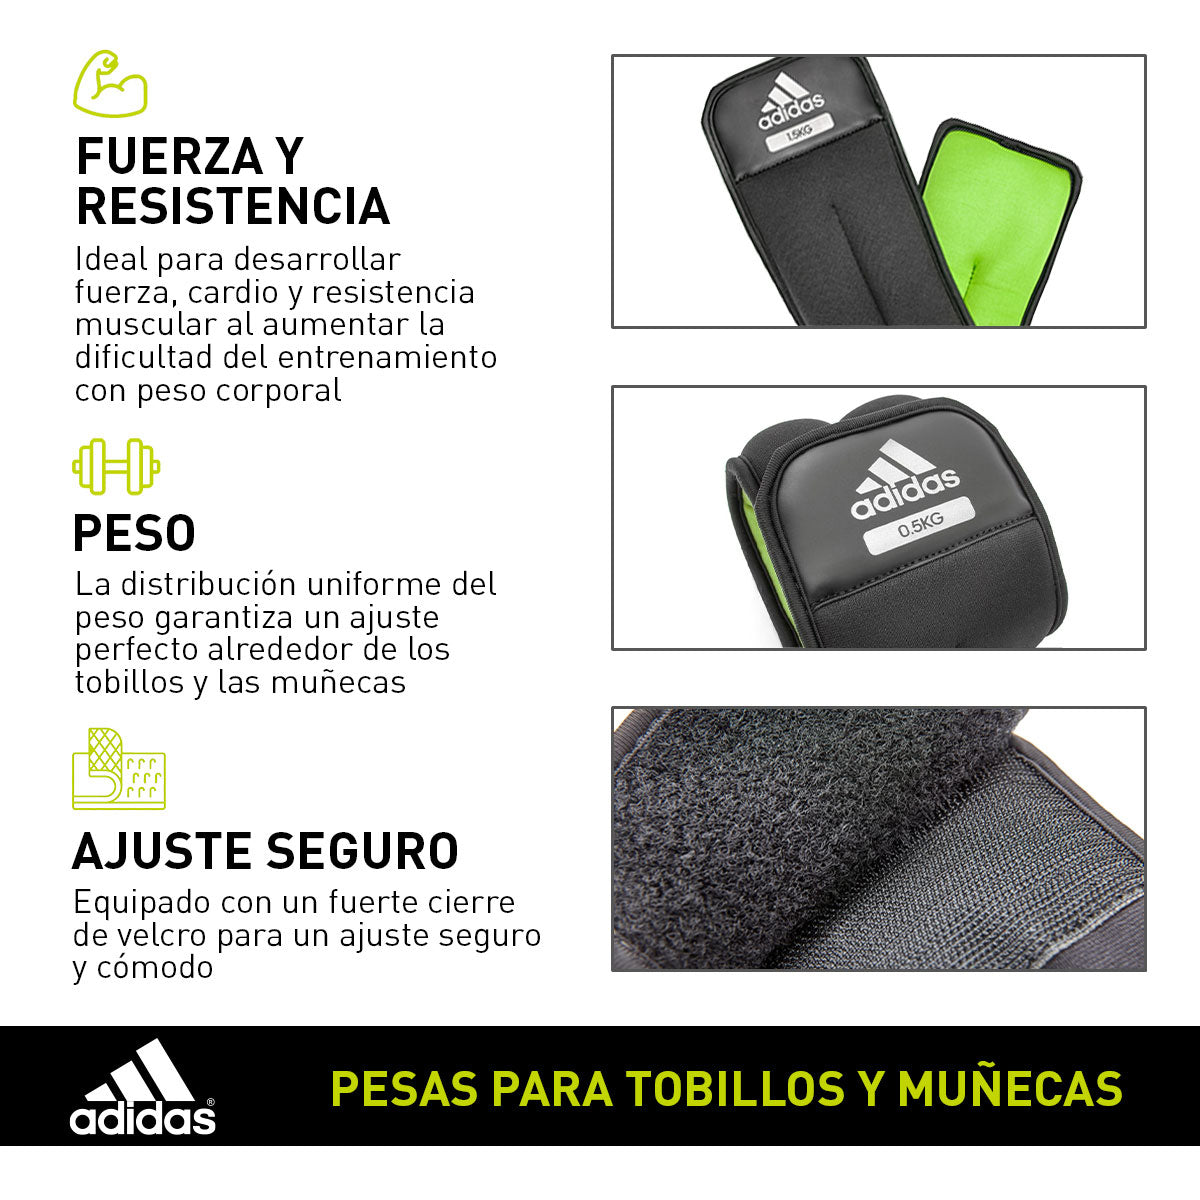 Adidas Pesas para tobillos y muñecas 2 de 0.5 KG – Fitness Town